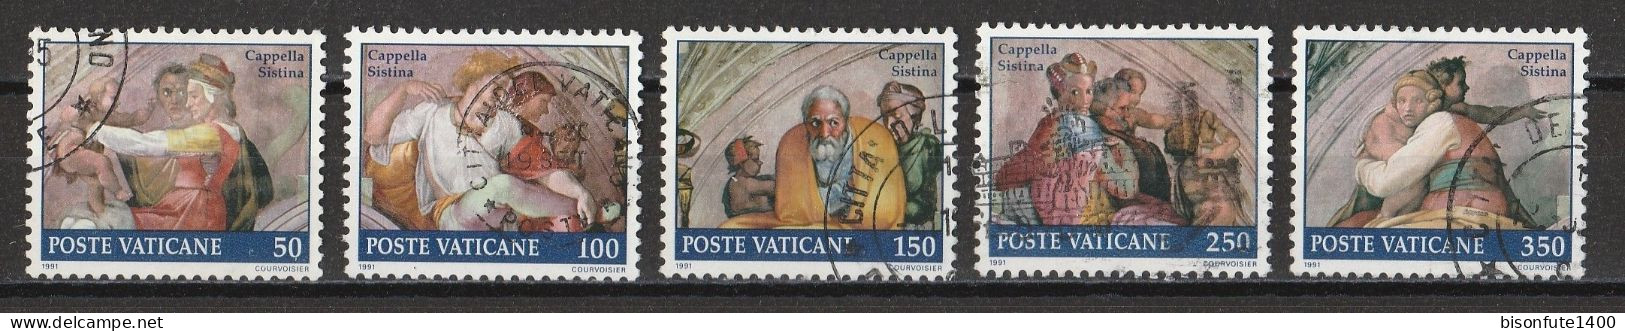 Vatican 1991 : Timbres Yvert & Tellier N° 891 - 892 - 893 - 894 - 895 - 897 - 898 - 899 - 900 Et 901 Oblitérés. - Gebruikt